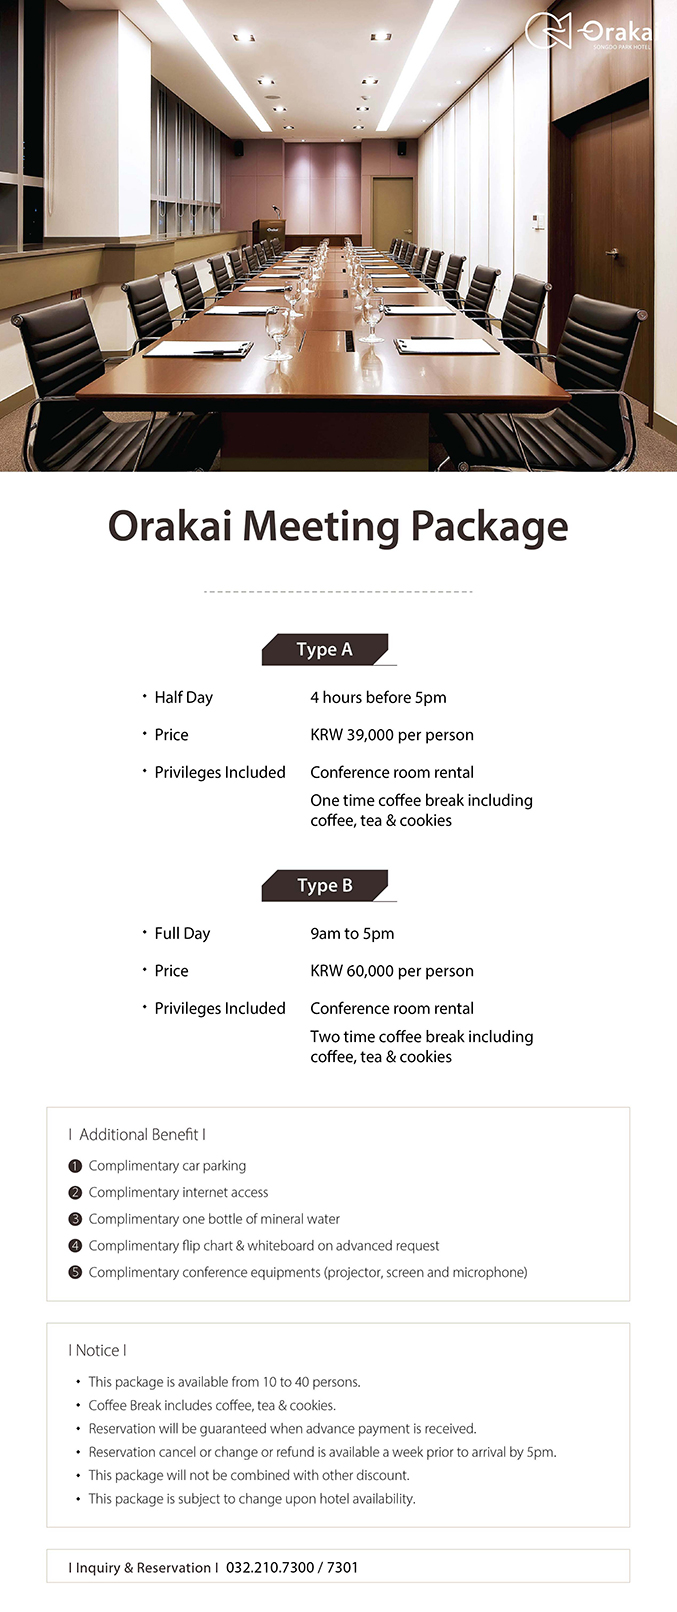 Orakai Meeting Package